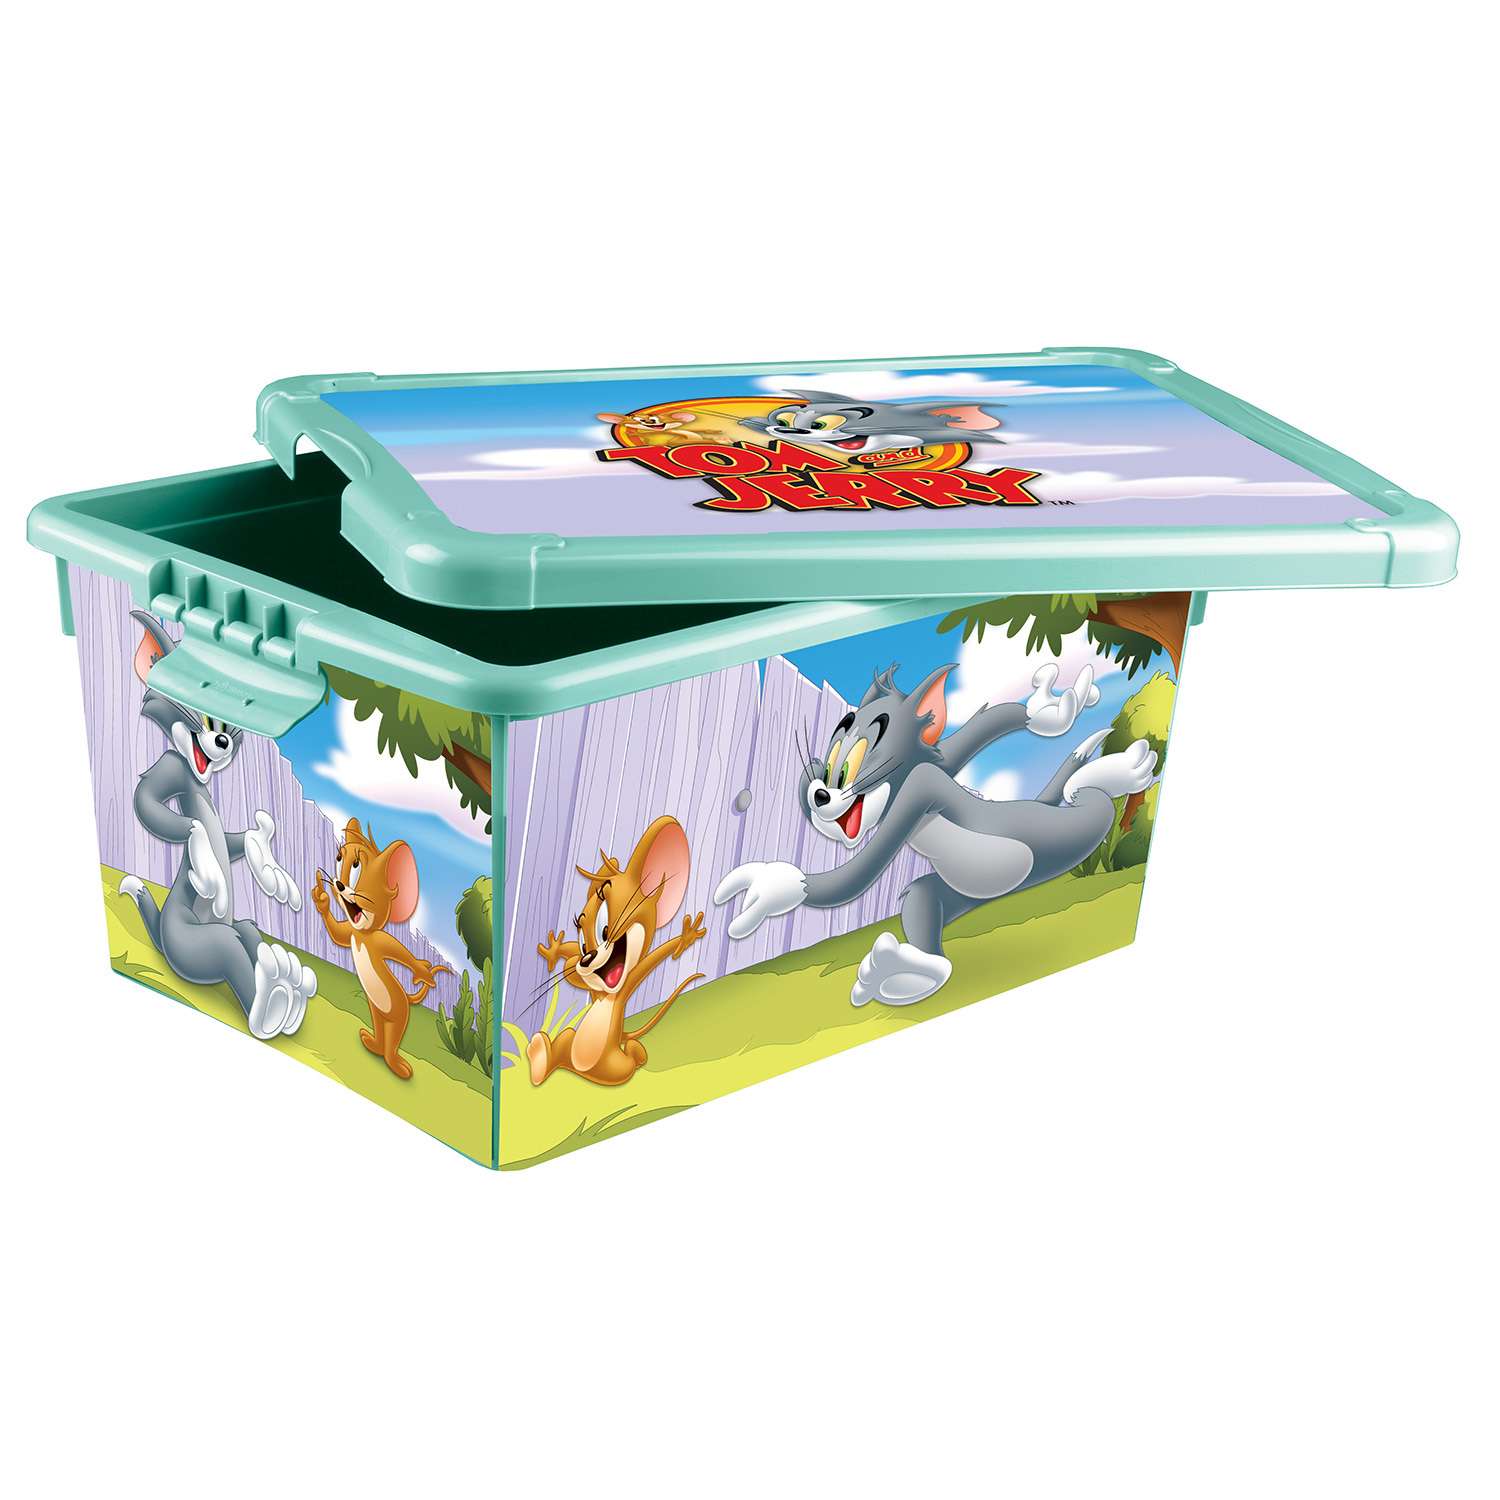 Ящик Пластишка Tom and Jerry универсальный с аппликацией Бирюзовый - фото 3